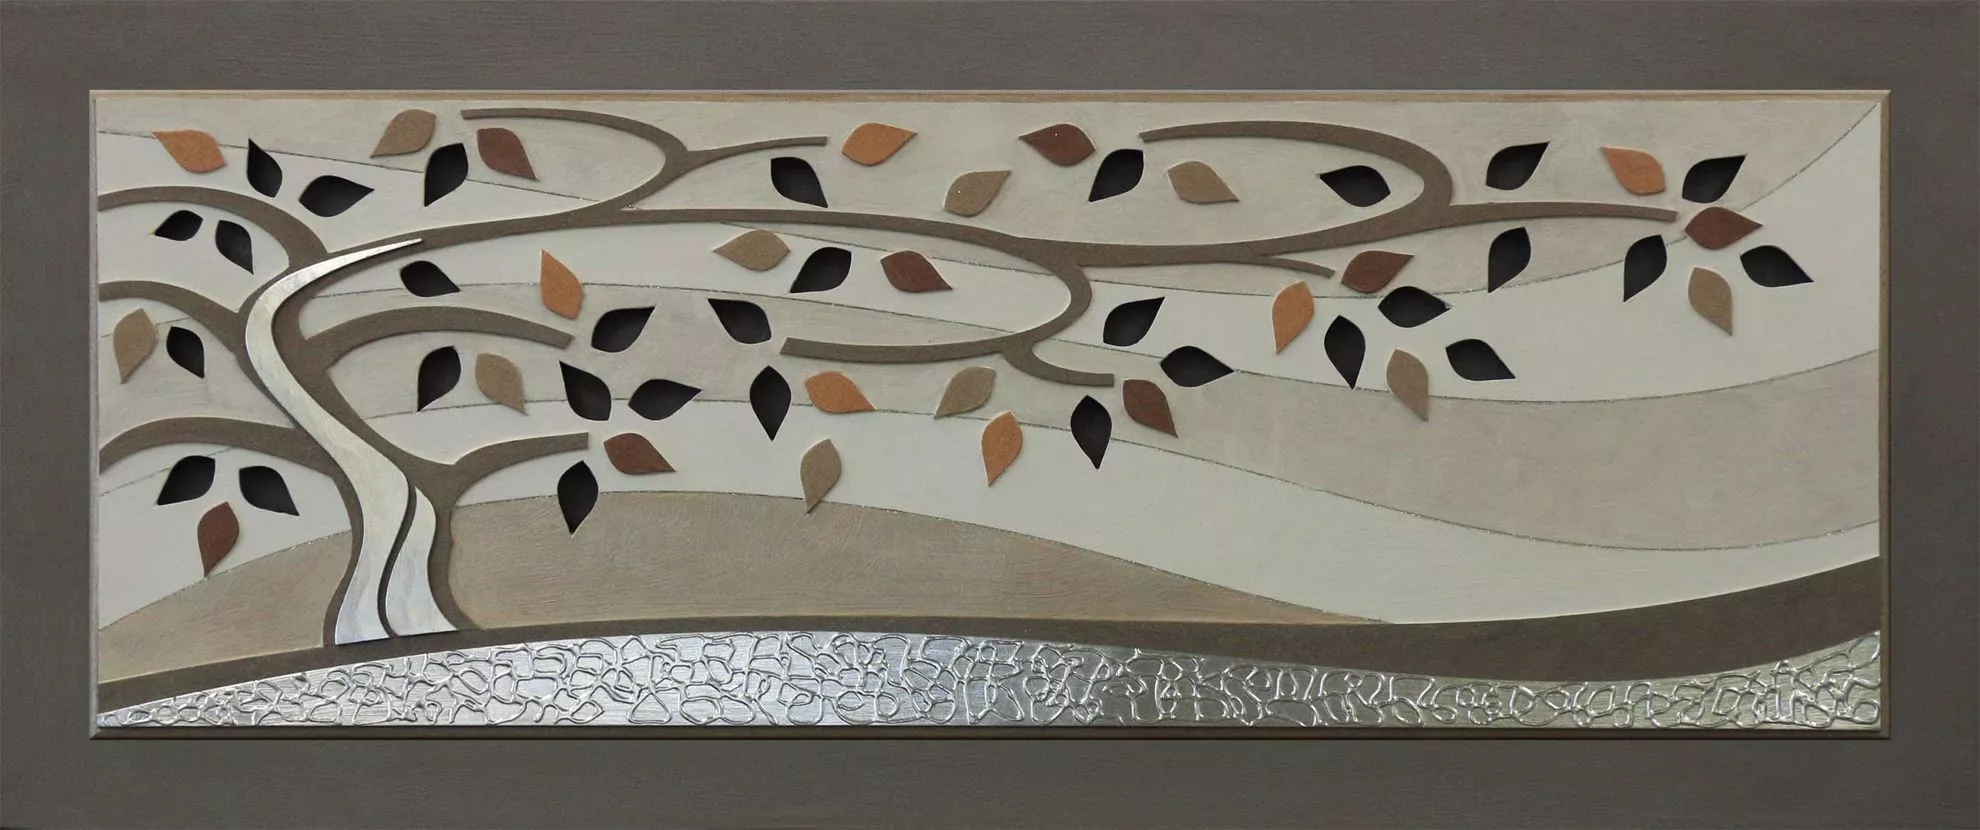 Artitalia Pannello decorativo con albero della vita realizzato in legno  155x65